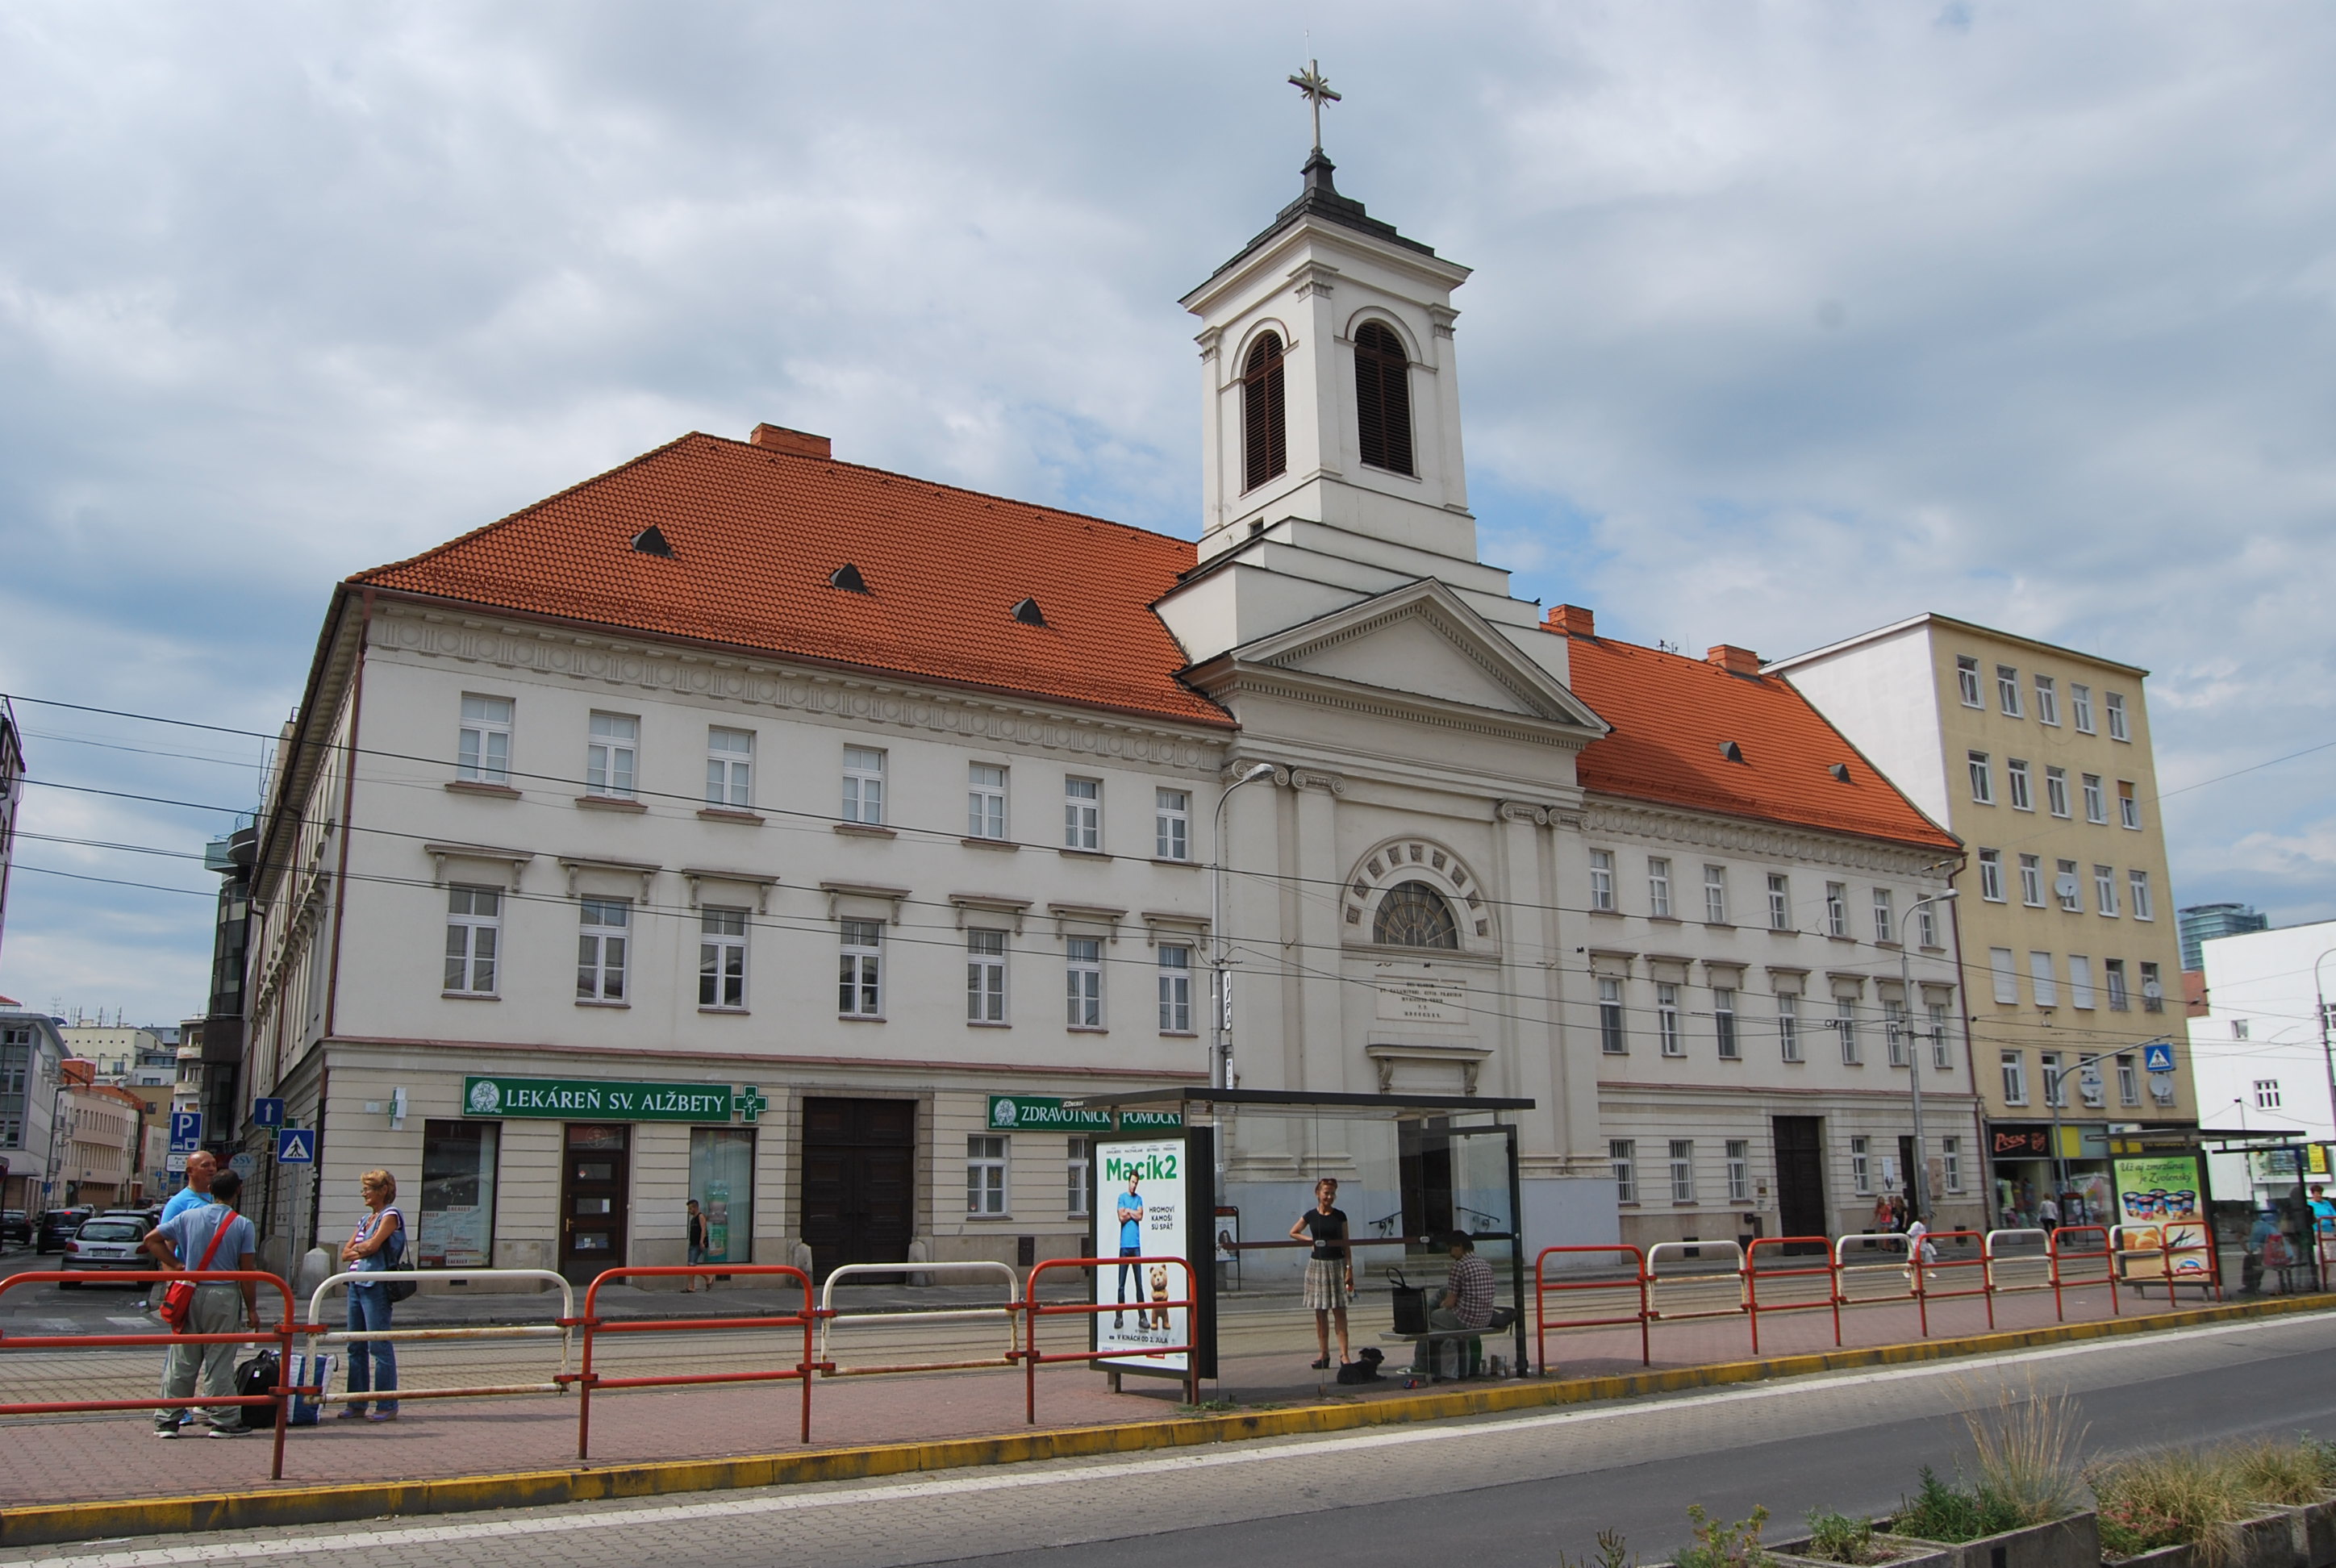 斯洛伐克国家剧院 修建于1886年,建筑绚丽多姿,这里是